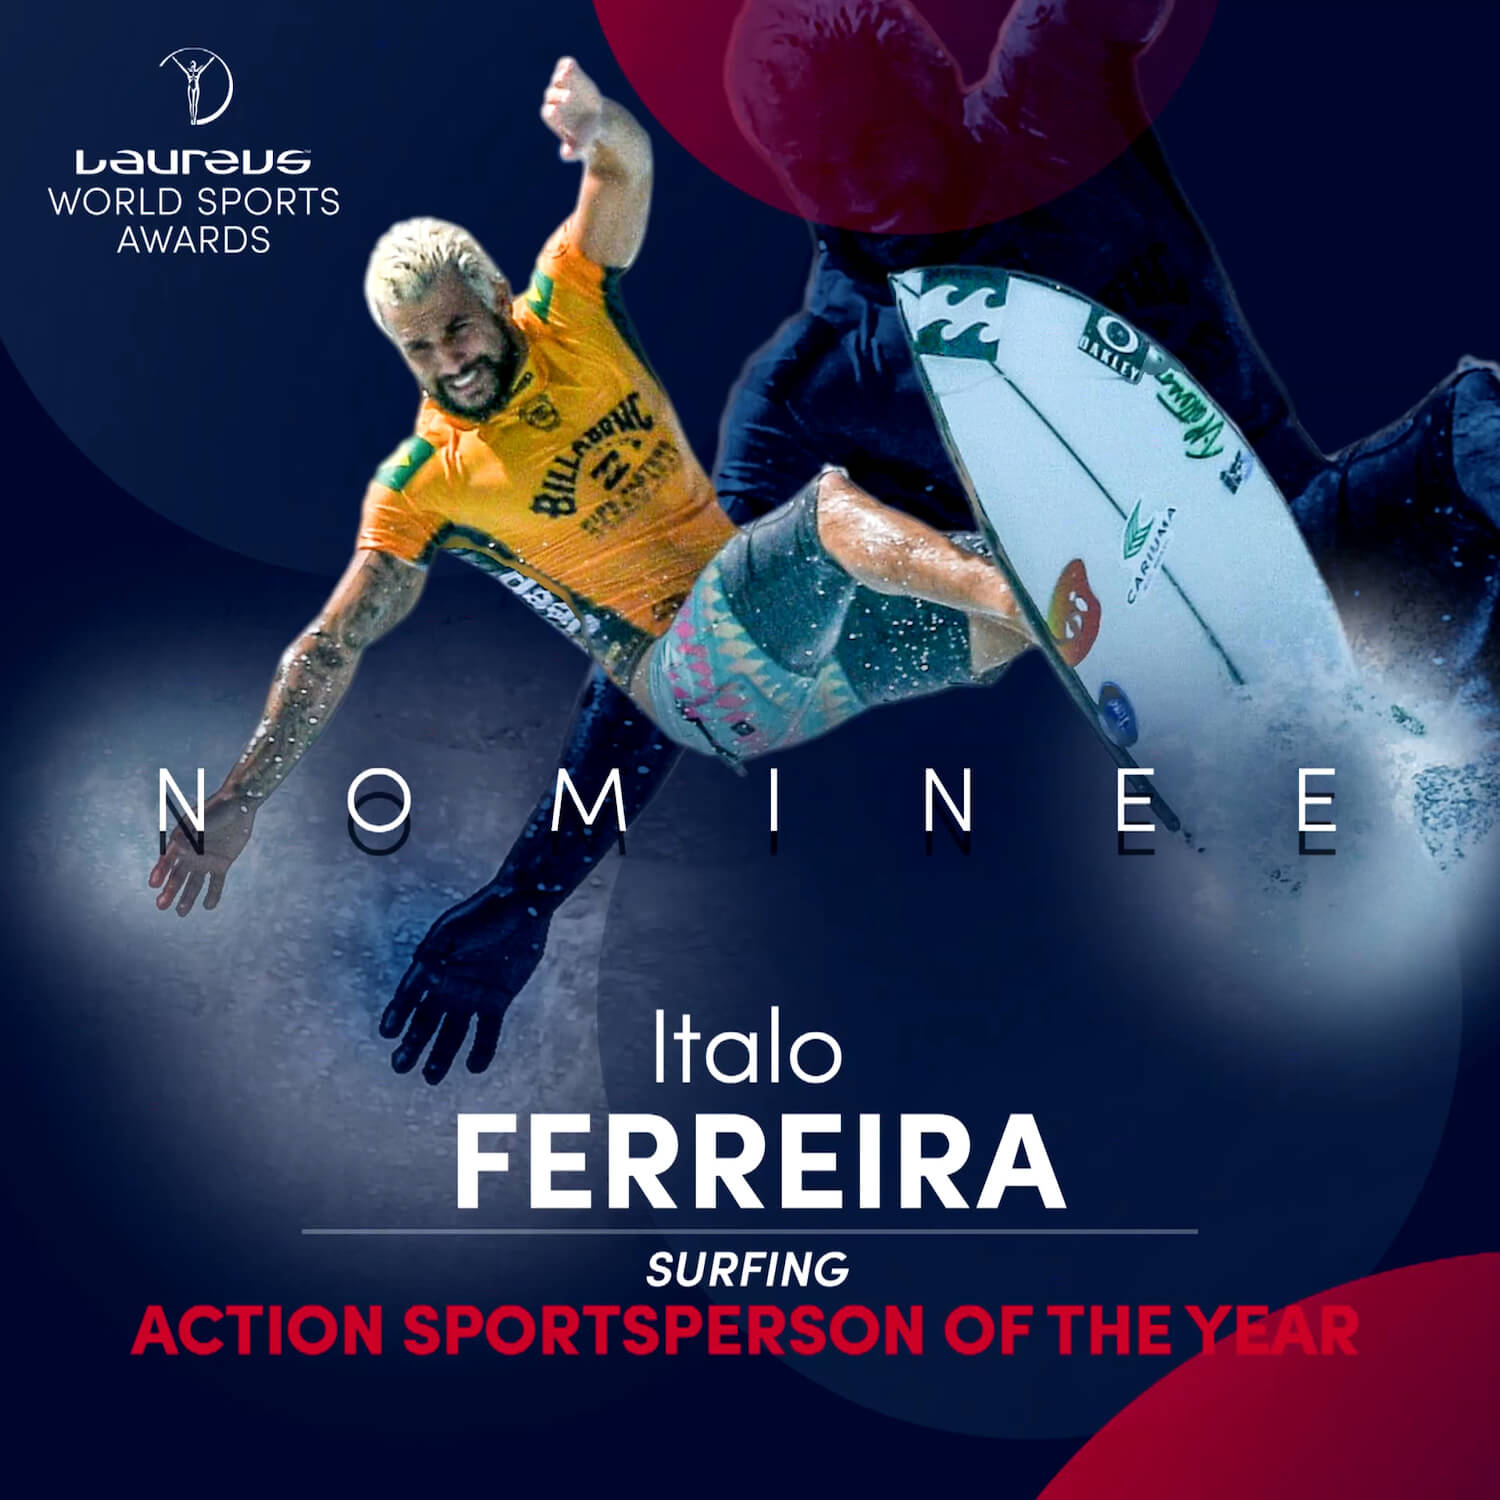 世界中のスポーツファンが選ぶ Laureus World Sports Awards 年間最優秀アクションスポーツ選手部門はサーフィン イタロ フェレイラ他5名がノミネート Fineplay